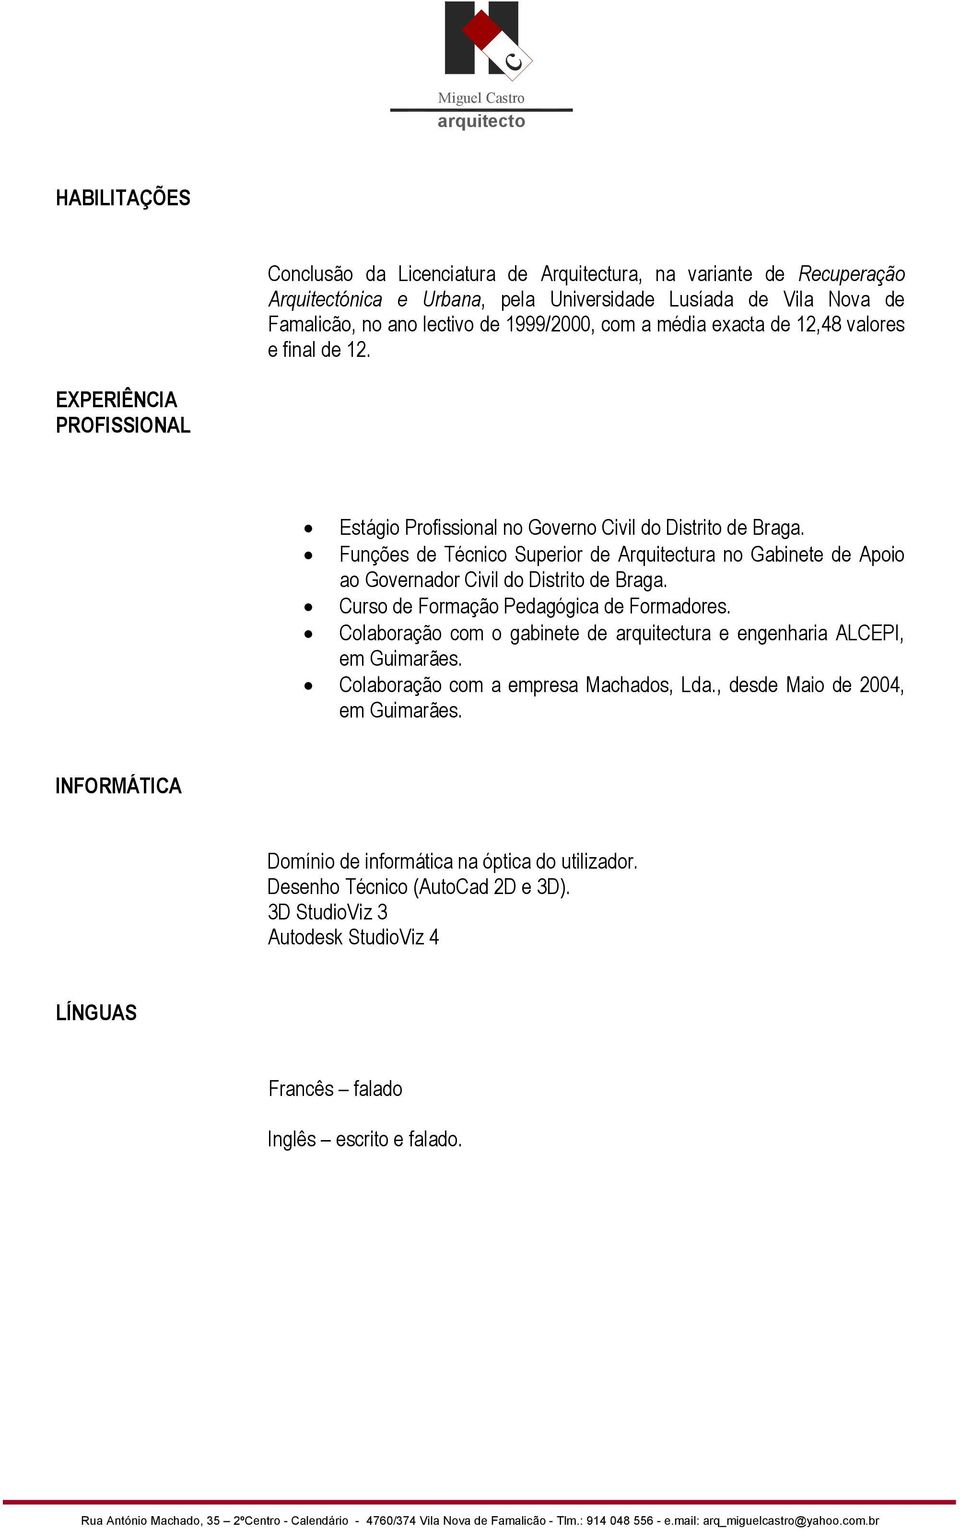 Funções de Técnico Superior de Arquitectura no Gabinete de Apoio ao Governador Civil do Distrito de Braga. Curso de Formação Pedagógica de Formadores.